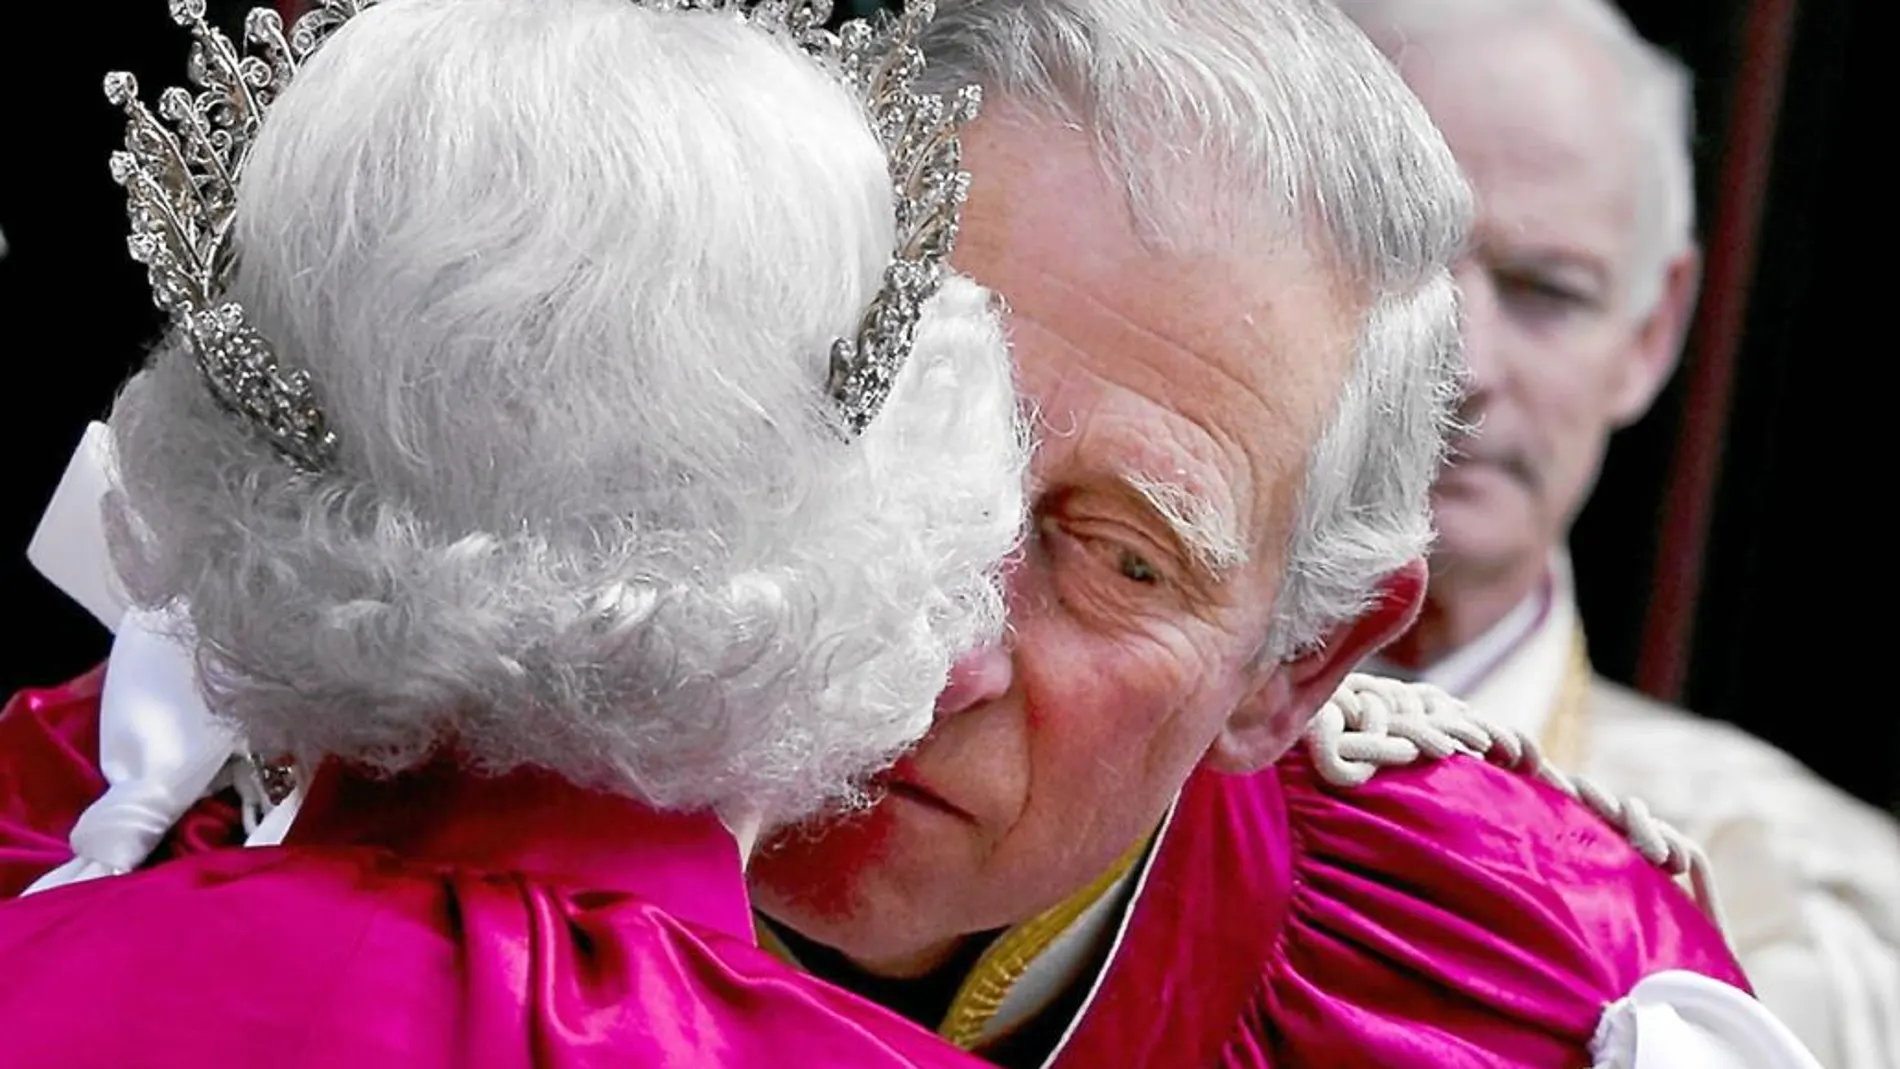 Durante el servicio de la Orden de Bath, que se celebra cada ocho años en la Abadía de Wentmister y fue en 2014, la Reina delegó por primera vez en su Maestro Mayor, el príncipe Carlos, la gran carga del acto que él al terminar selló con un beso